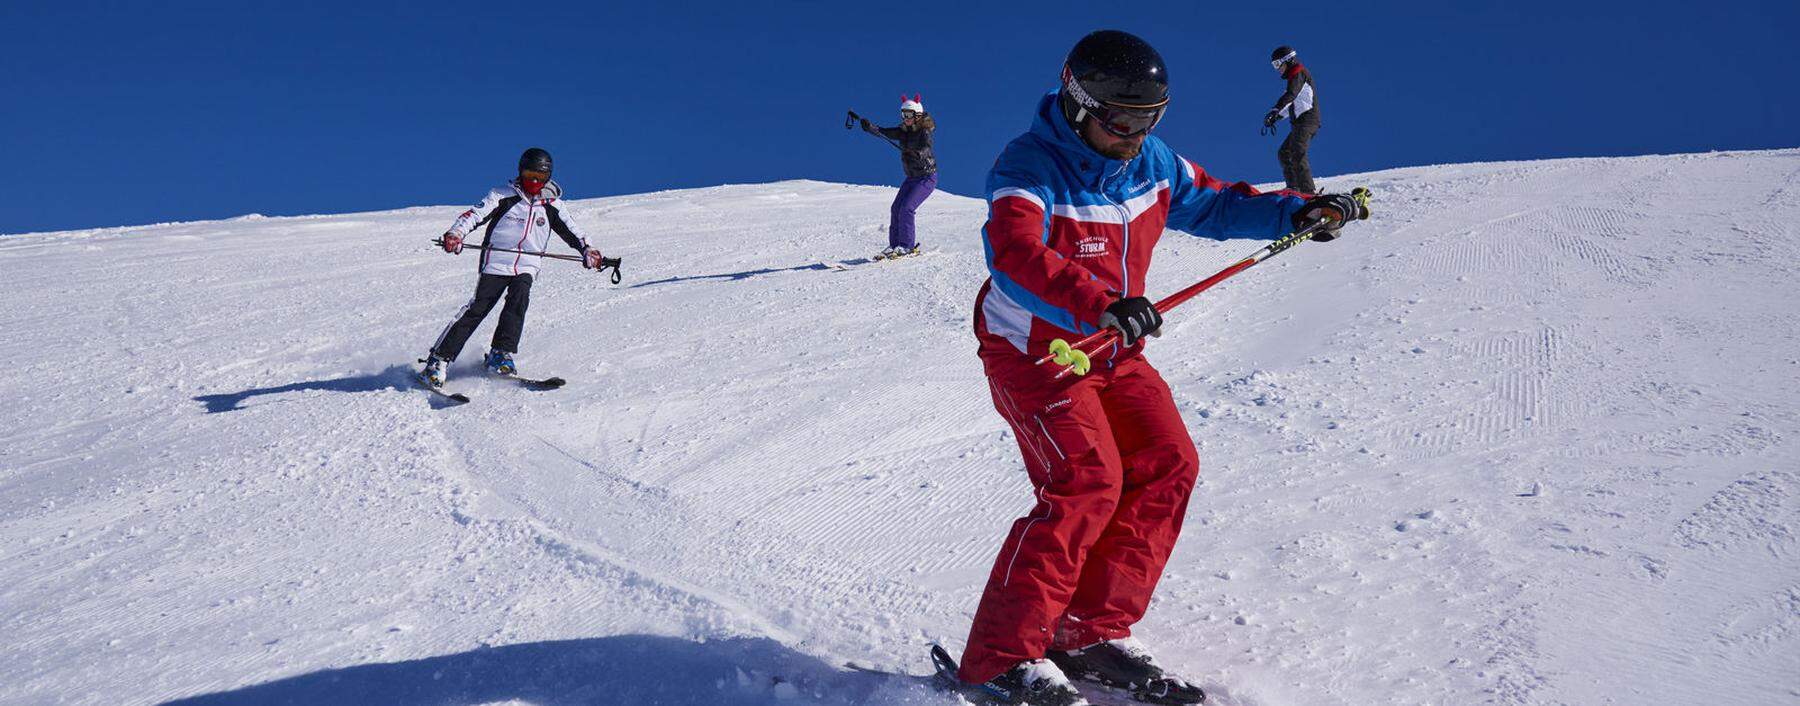 Viele Skilehrer nutzen die Zeit und produzieren derzeit Erklärvideos, weil der klassische Unterricht wie hier derzeit nicht möglich ist. 